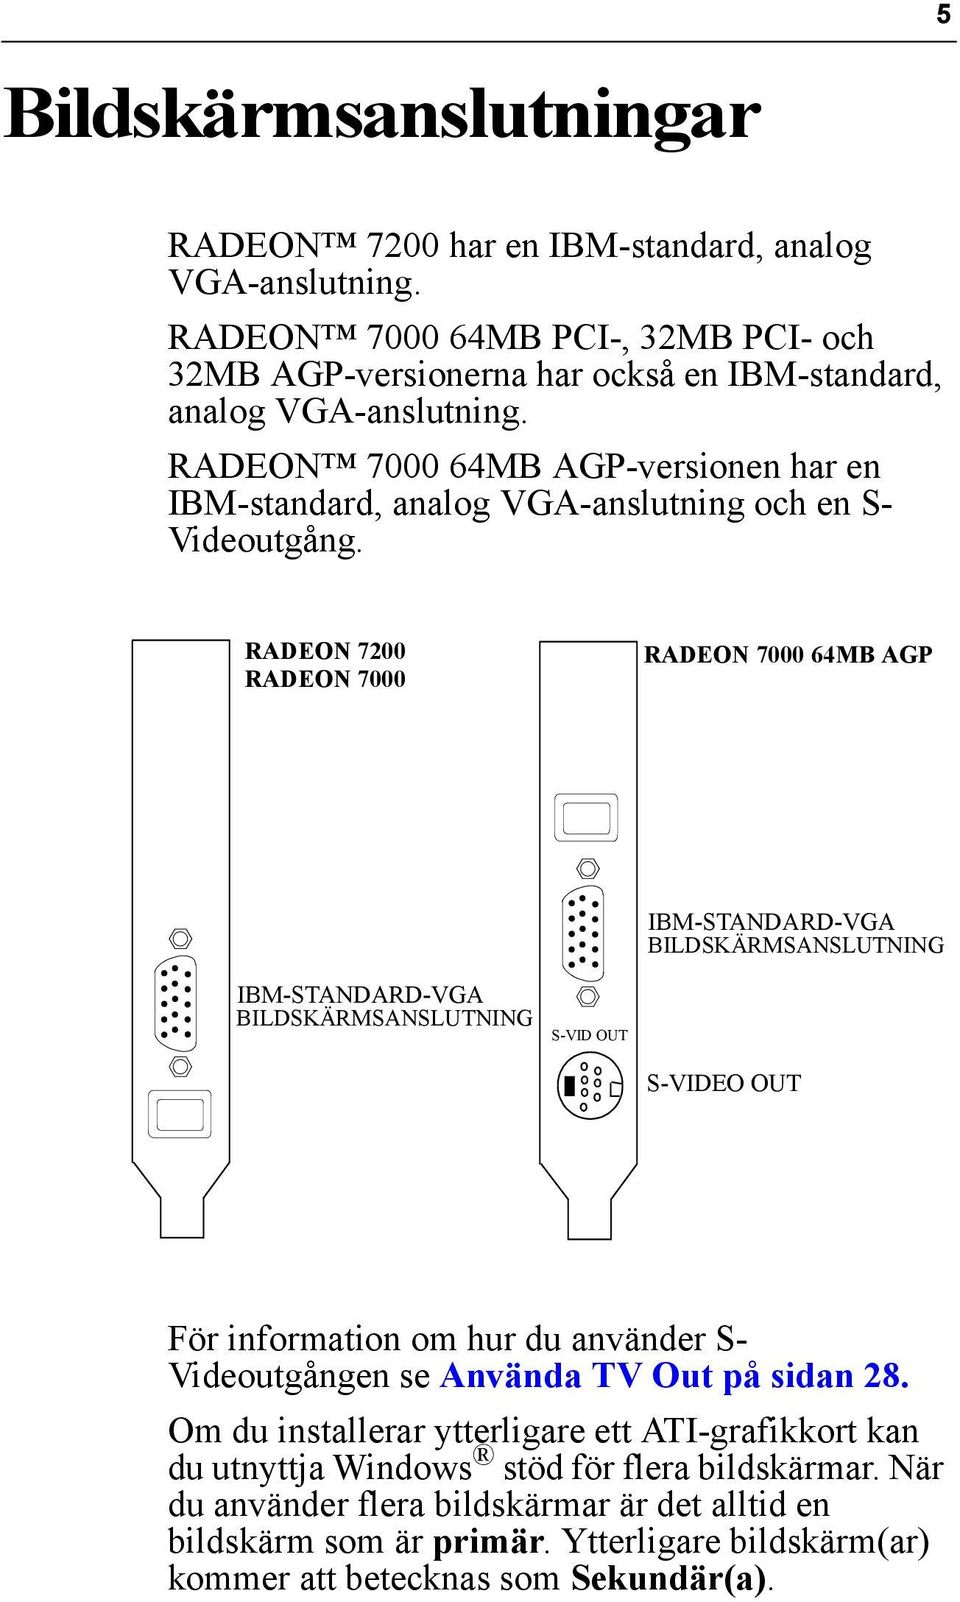 RADEON 7200 RADEON 7000 RADEON 7000 64MB AGP IBM-STANDARD-VGA BILDSKÄRMSANSLUTNING IBM-STANDARD-VGA BILDSKÄRMSANSLUTNING S-VID OUT S-VIDEO OUT För information om hur du använder S-